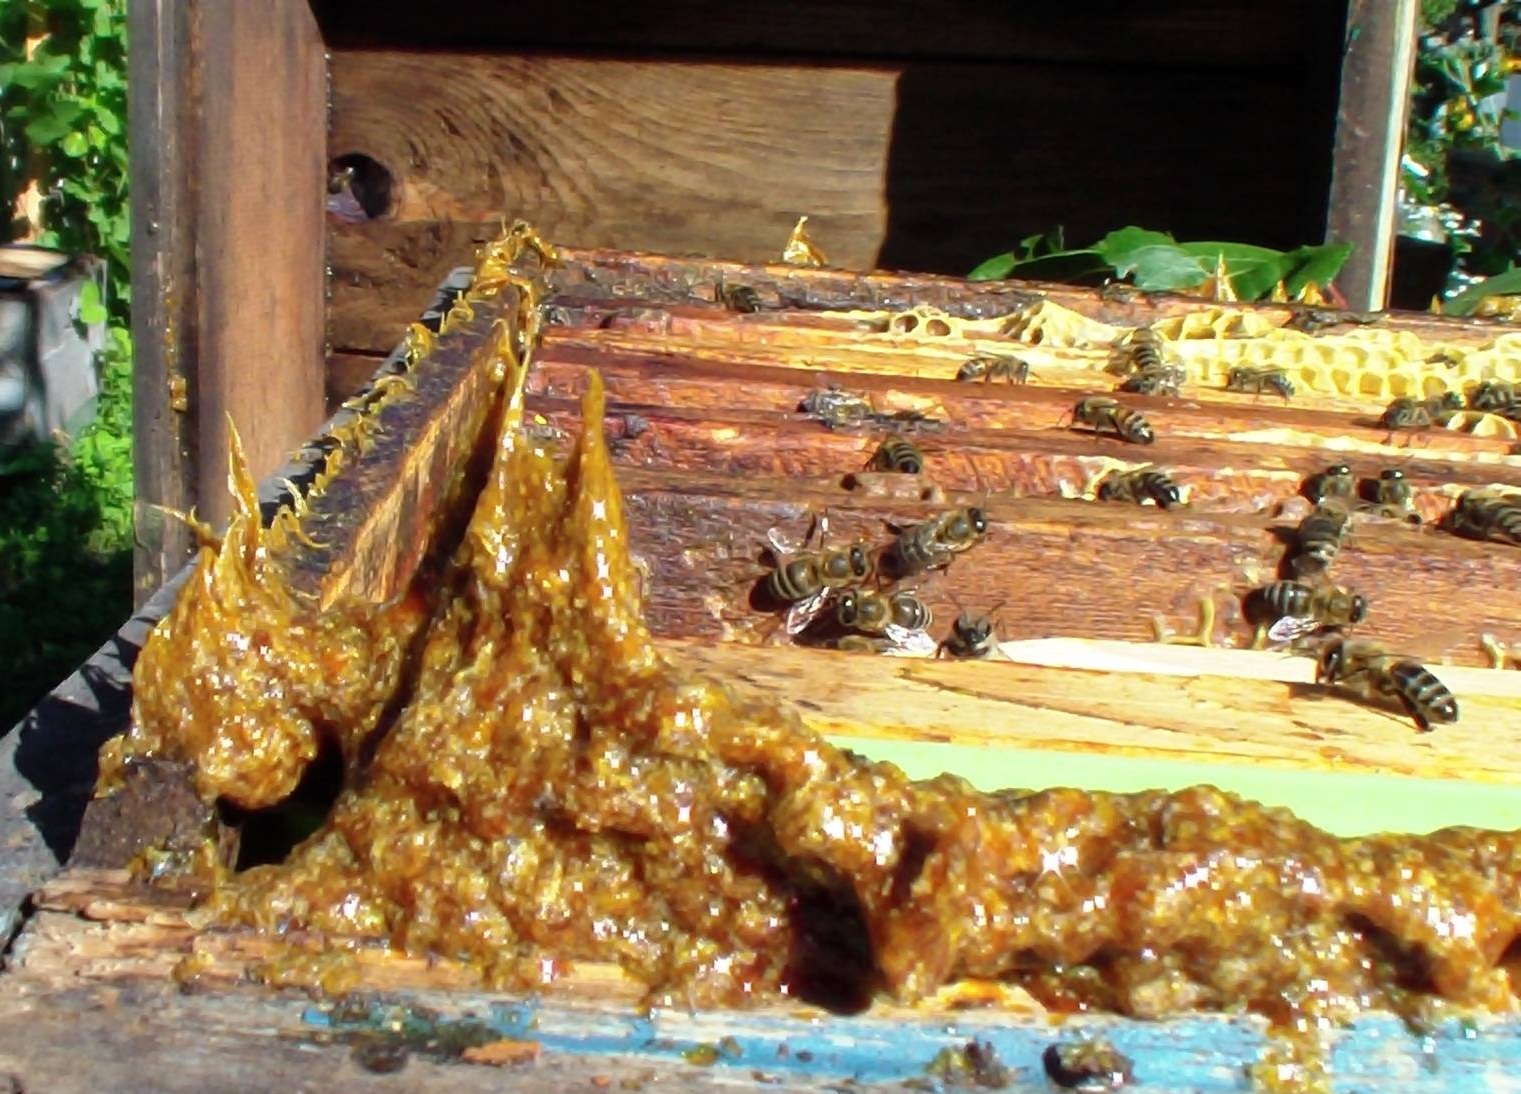 Прополис пчелиный натуральный как выглядит фото